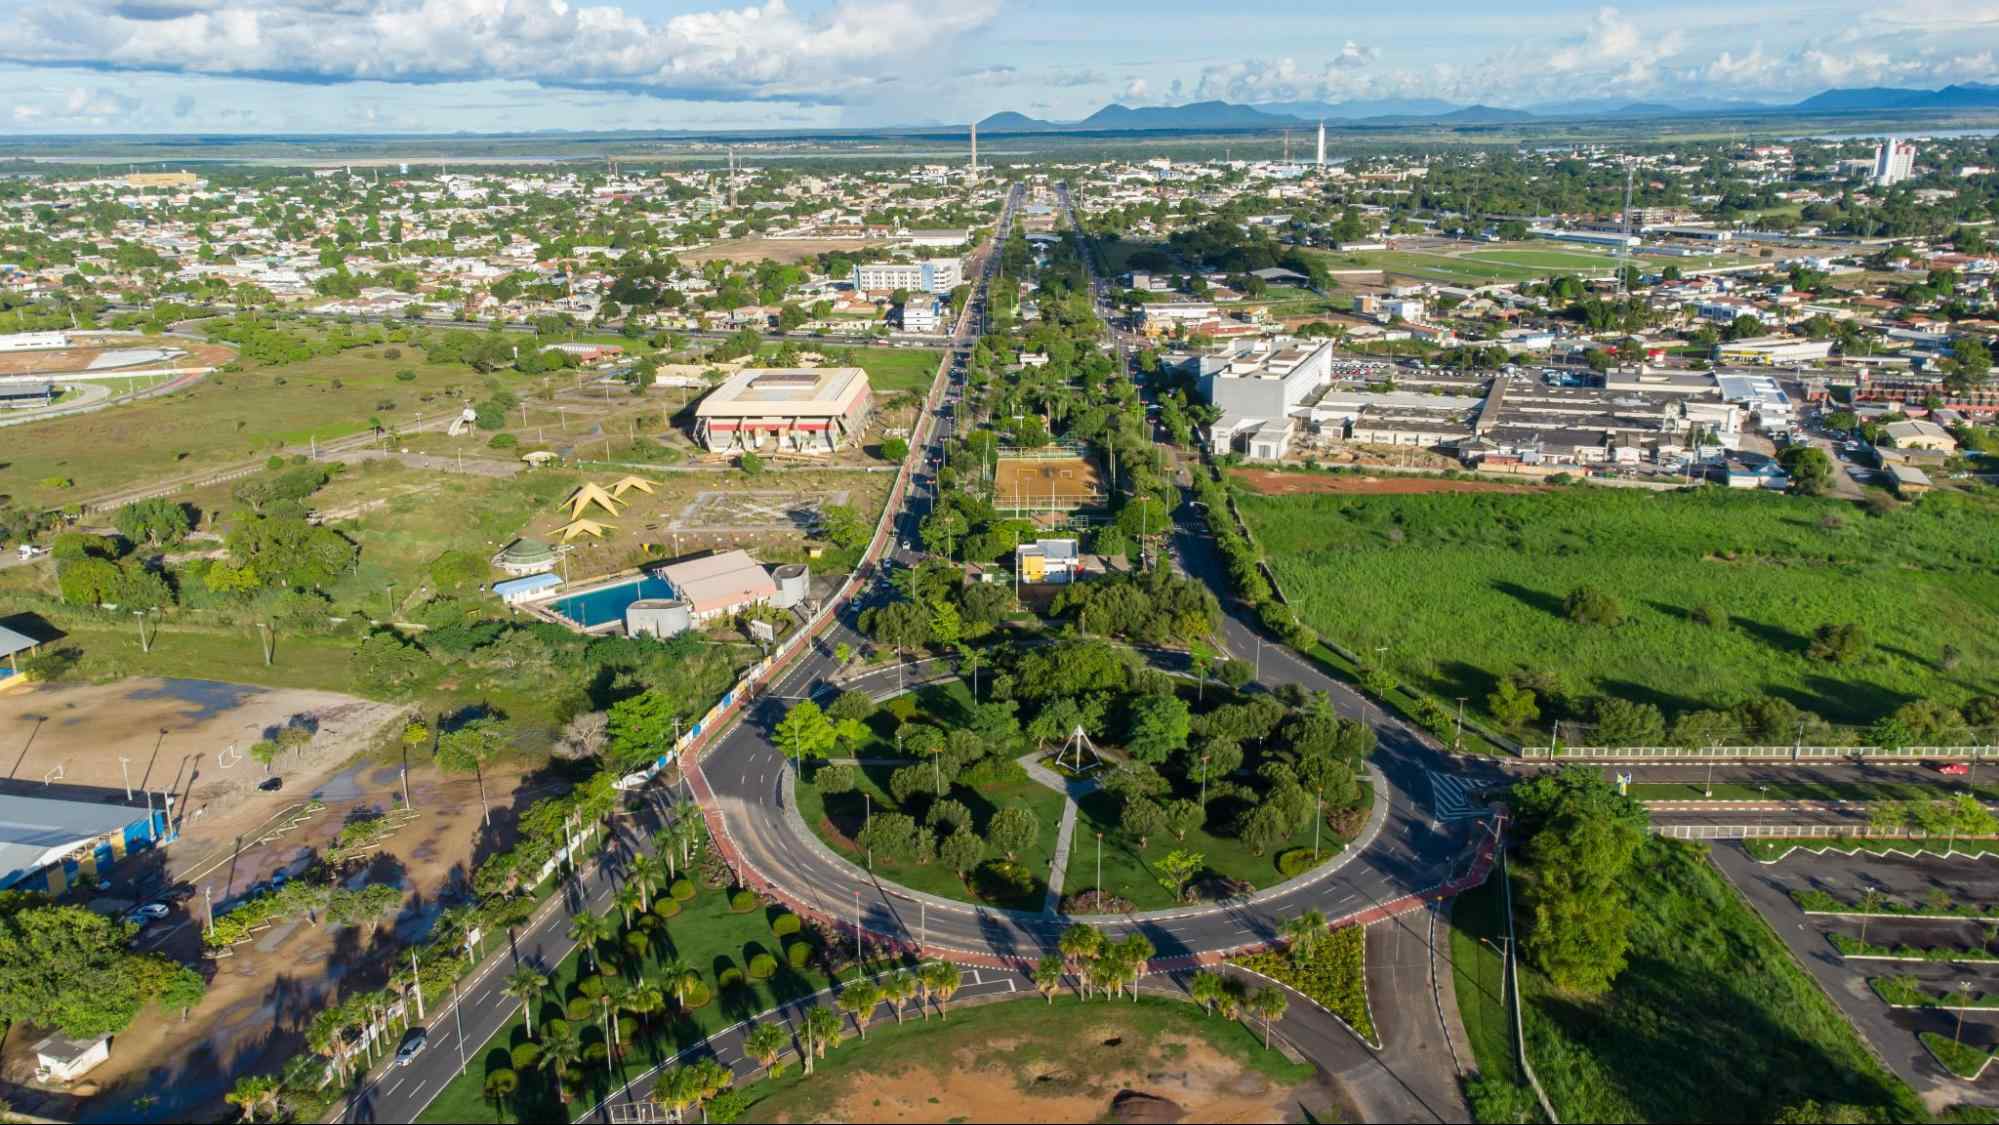 Vista aérea da cidade de Boa Vista RR. Rotatória centralizada na imagem, com diversas árvores em seu centro e com as ruas ao redor também repletas de área verde